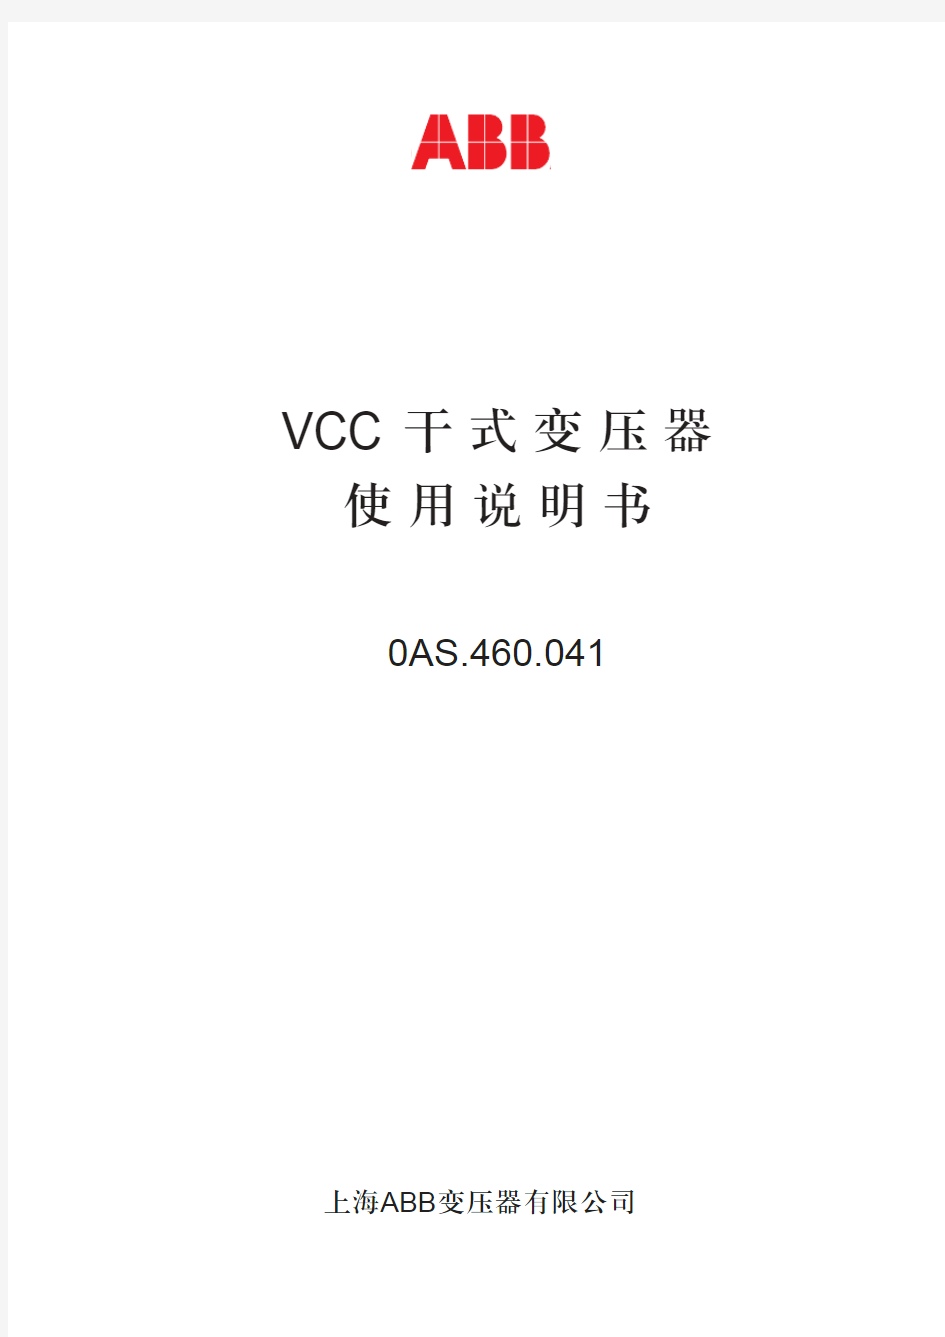 VCC干式变压器使用说明书(中文)0AS.460.041